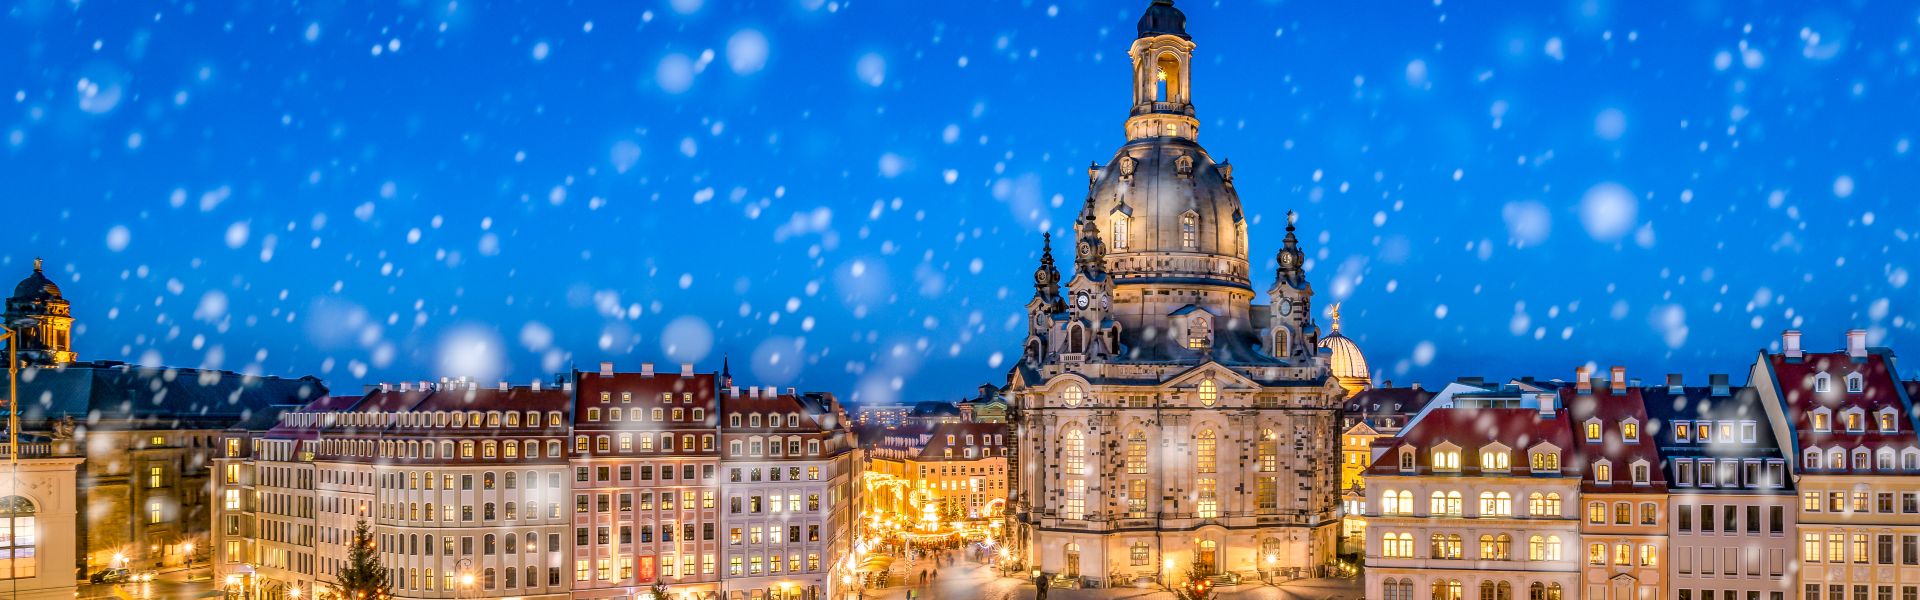 Dresden_mit_Schnee